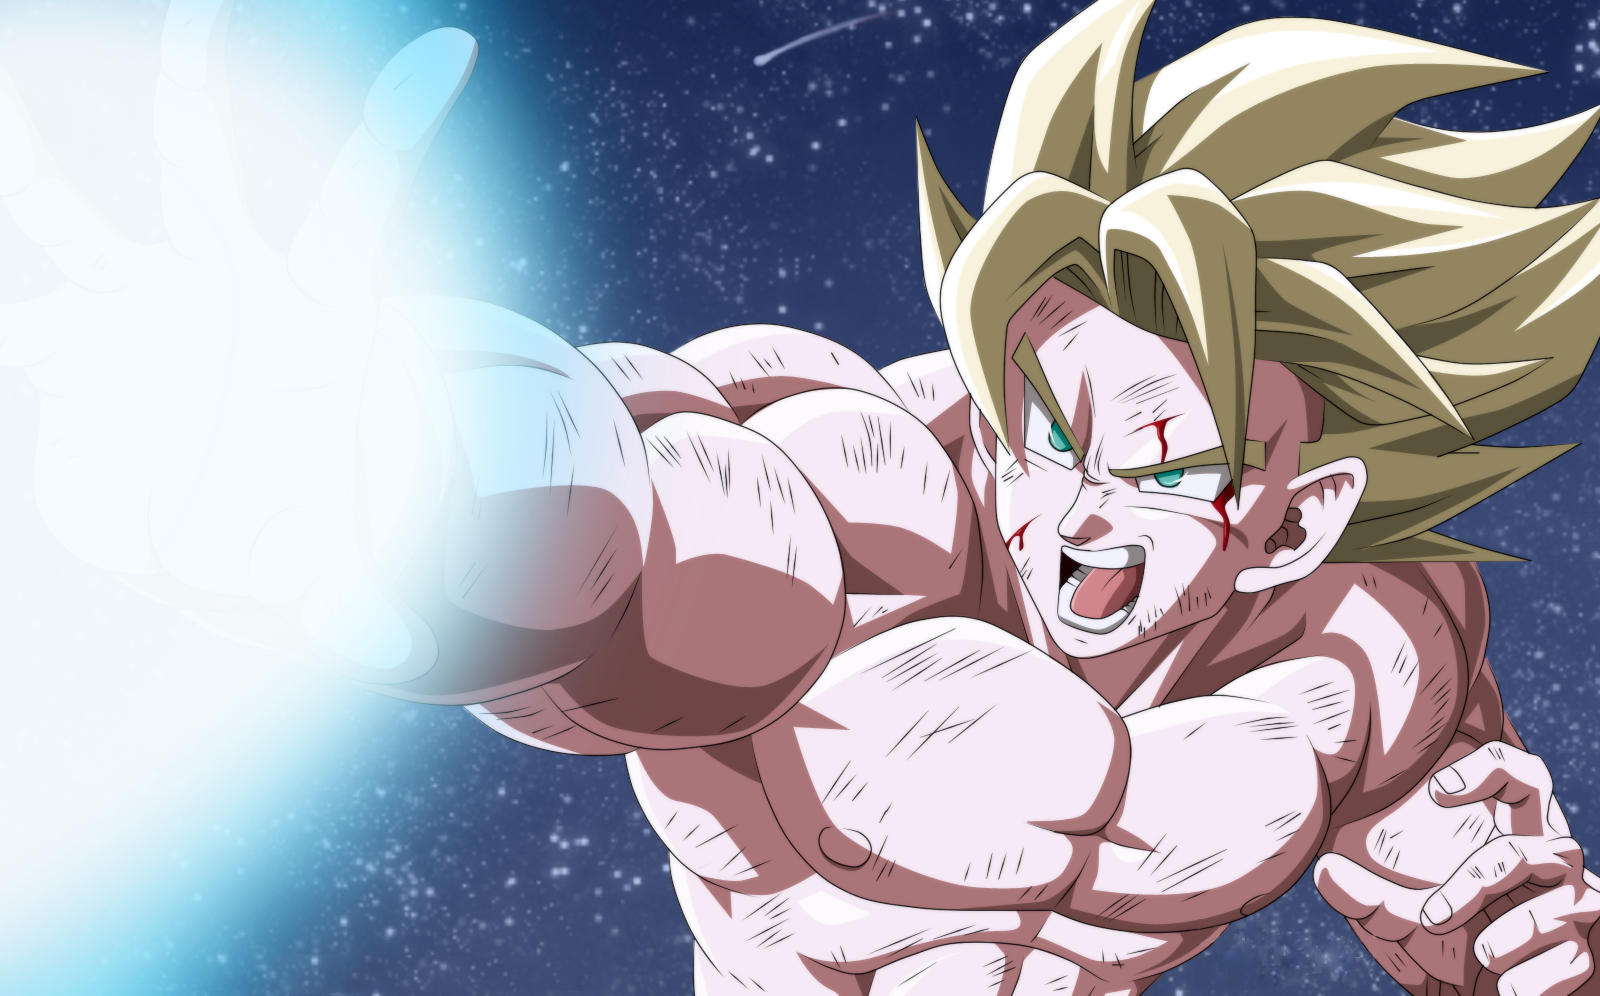 Goku by Fabian Sandi